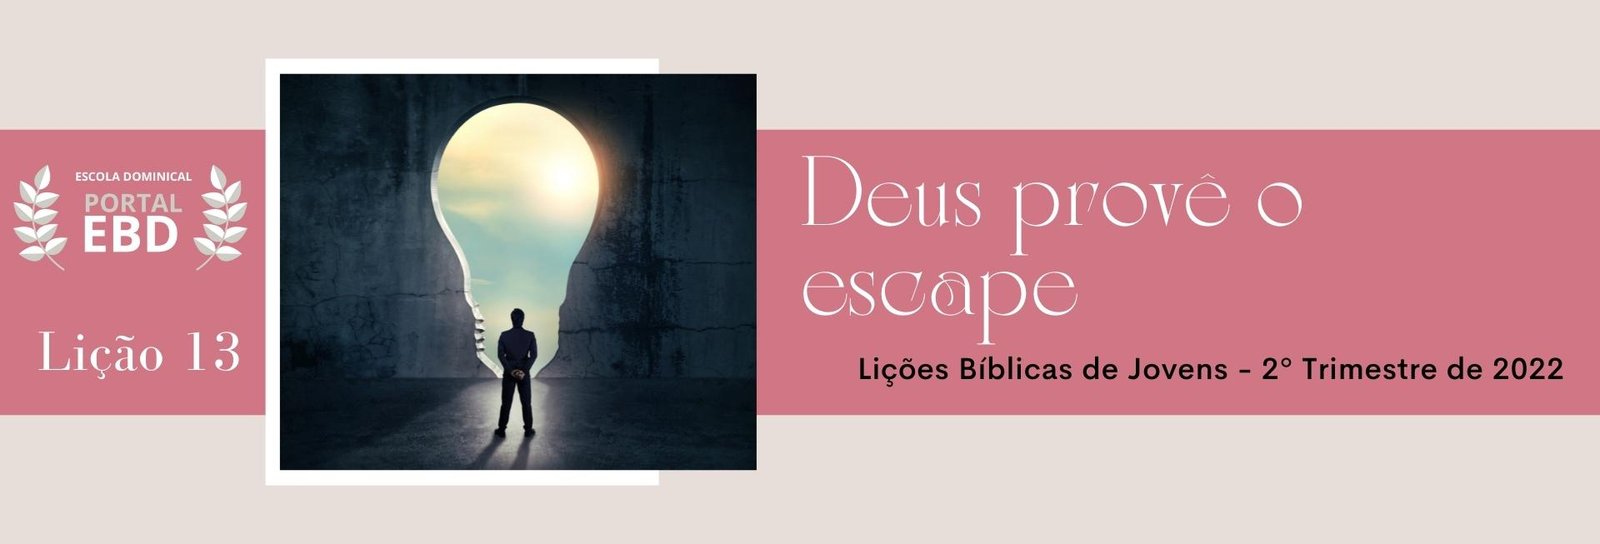 Lição 13 - Deus provê o escape I